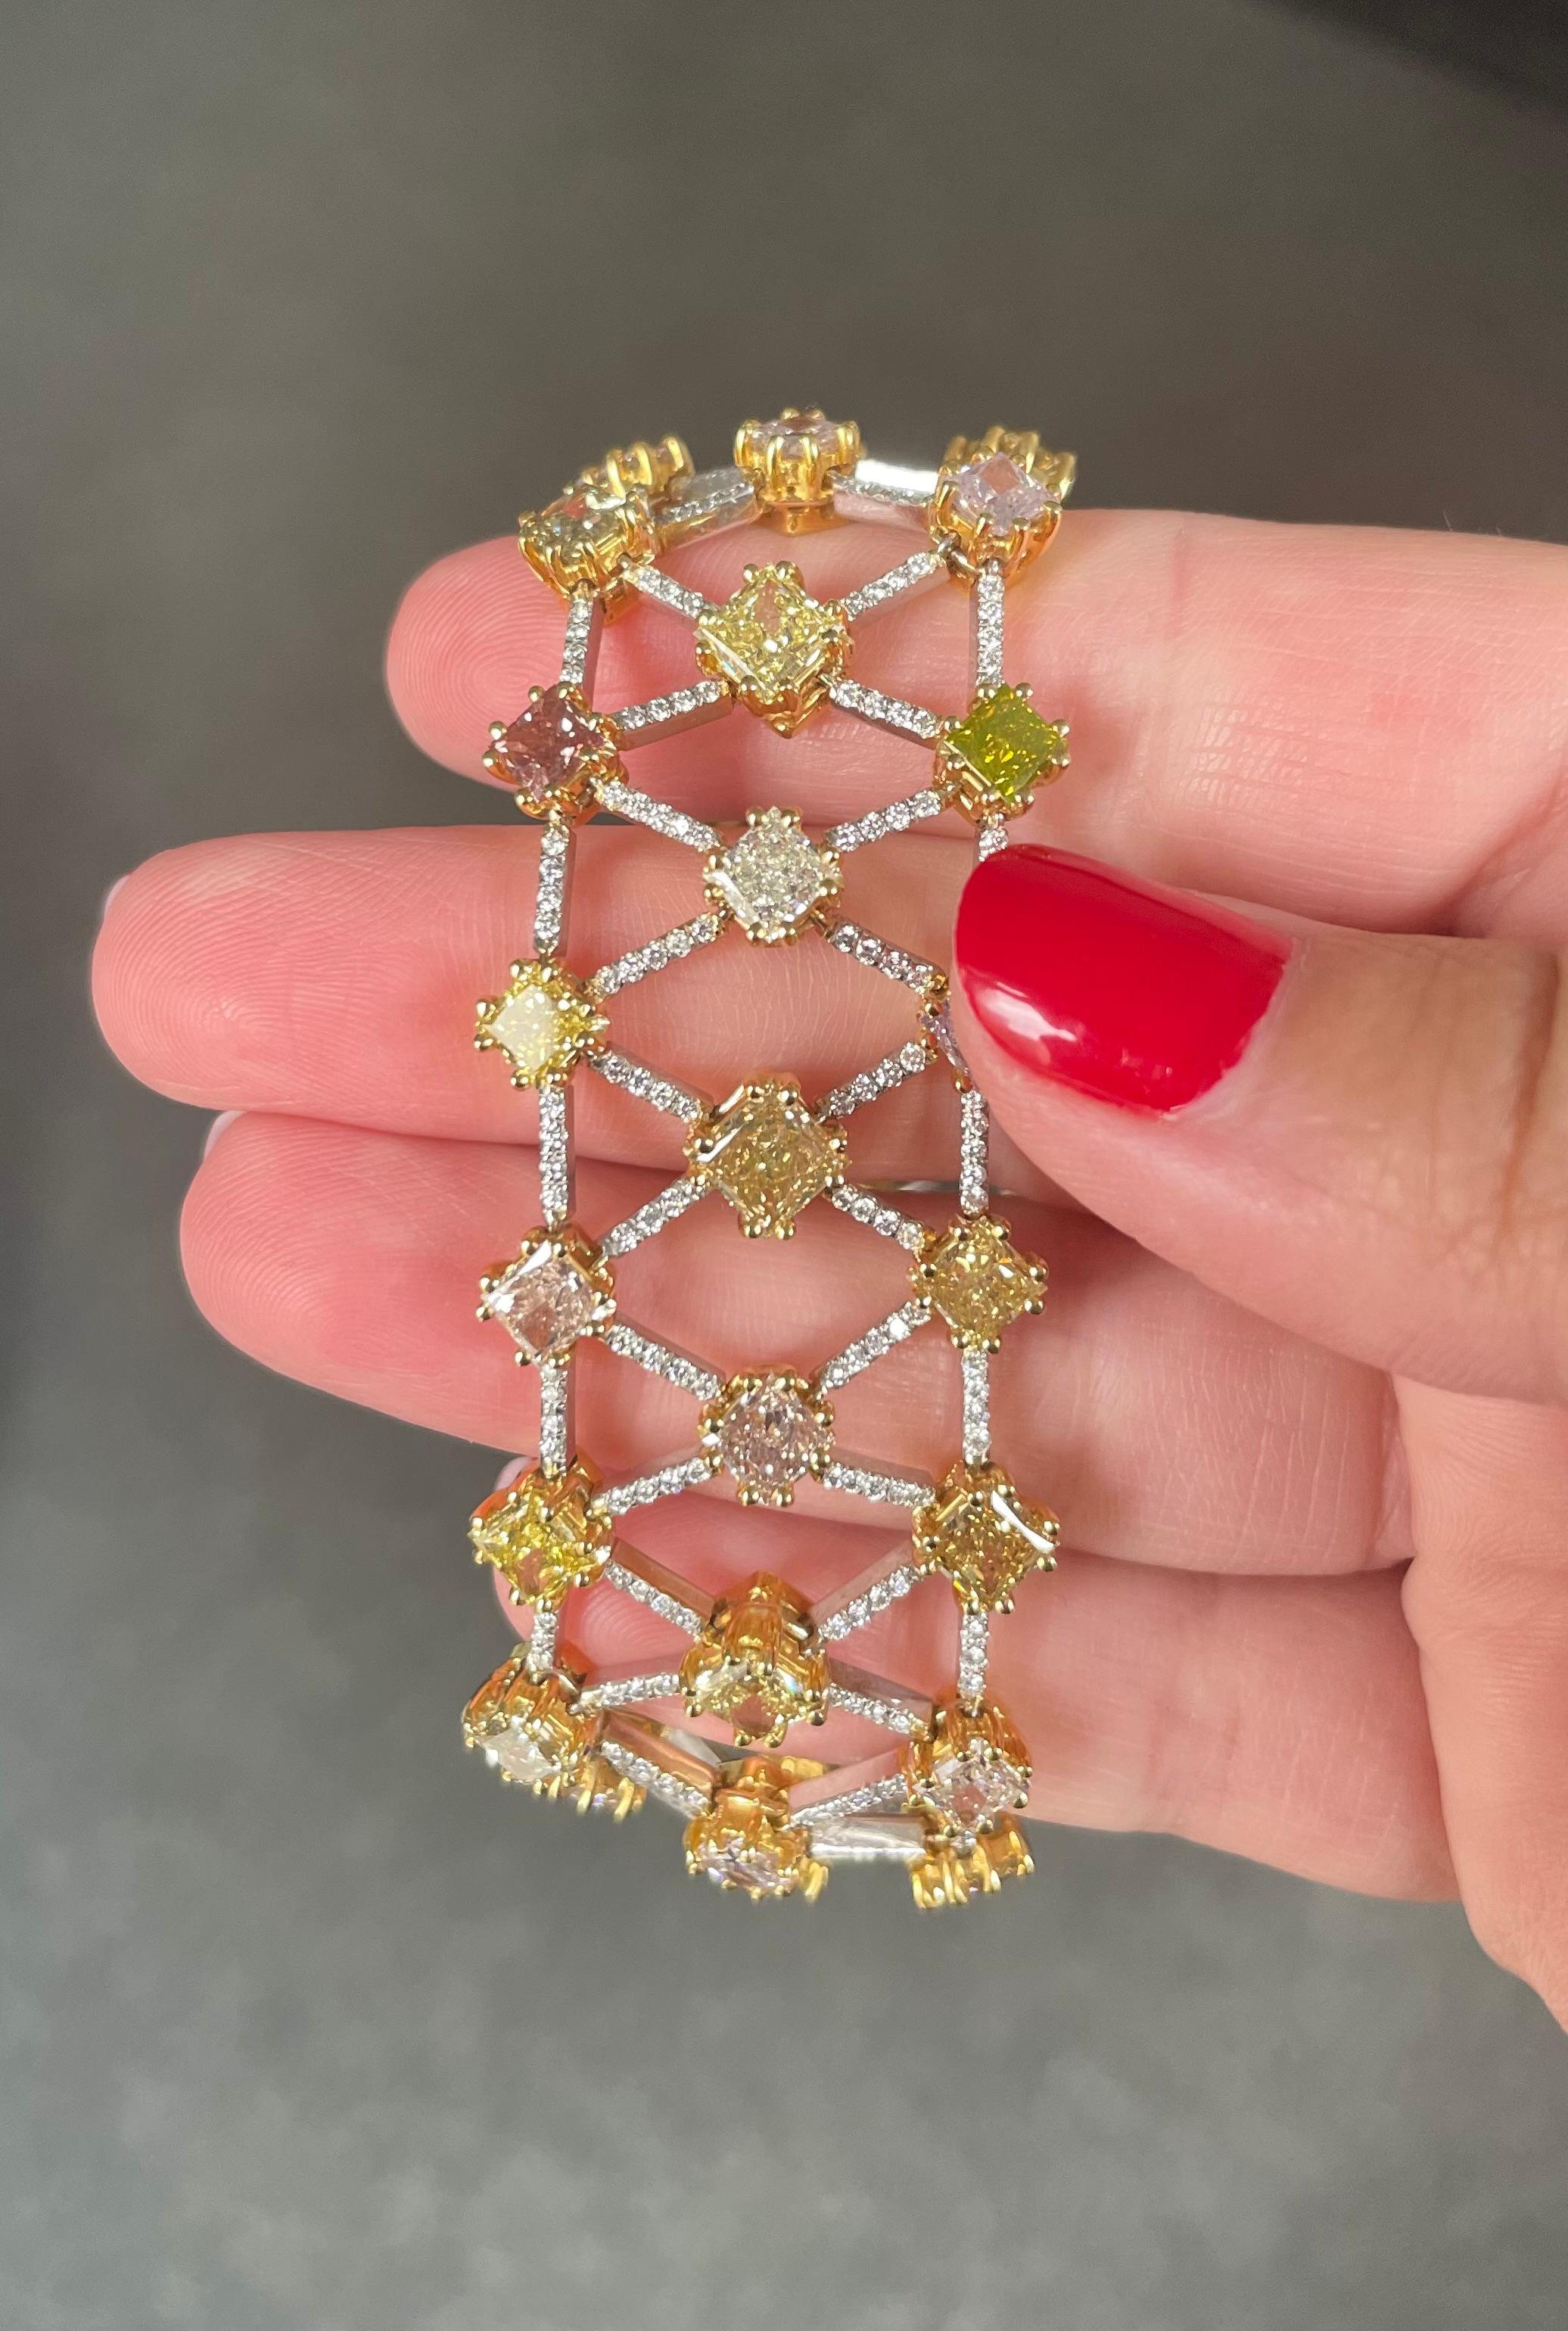 Dieses außergewöhnliche Fest der Farben ist wirklich ein einzigartiges Stück! Dieses wunderschöne Armband ist ein Regenbogen aus gelben, grünen, rosafarbenen und orangefarbenen, ausgefallenen Diamanten. Die Diamanten sind in 18 Karat Gelbgold